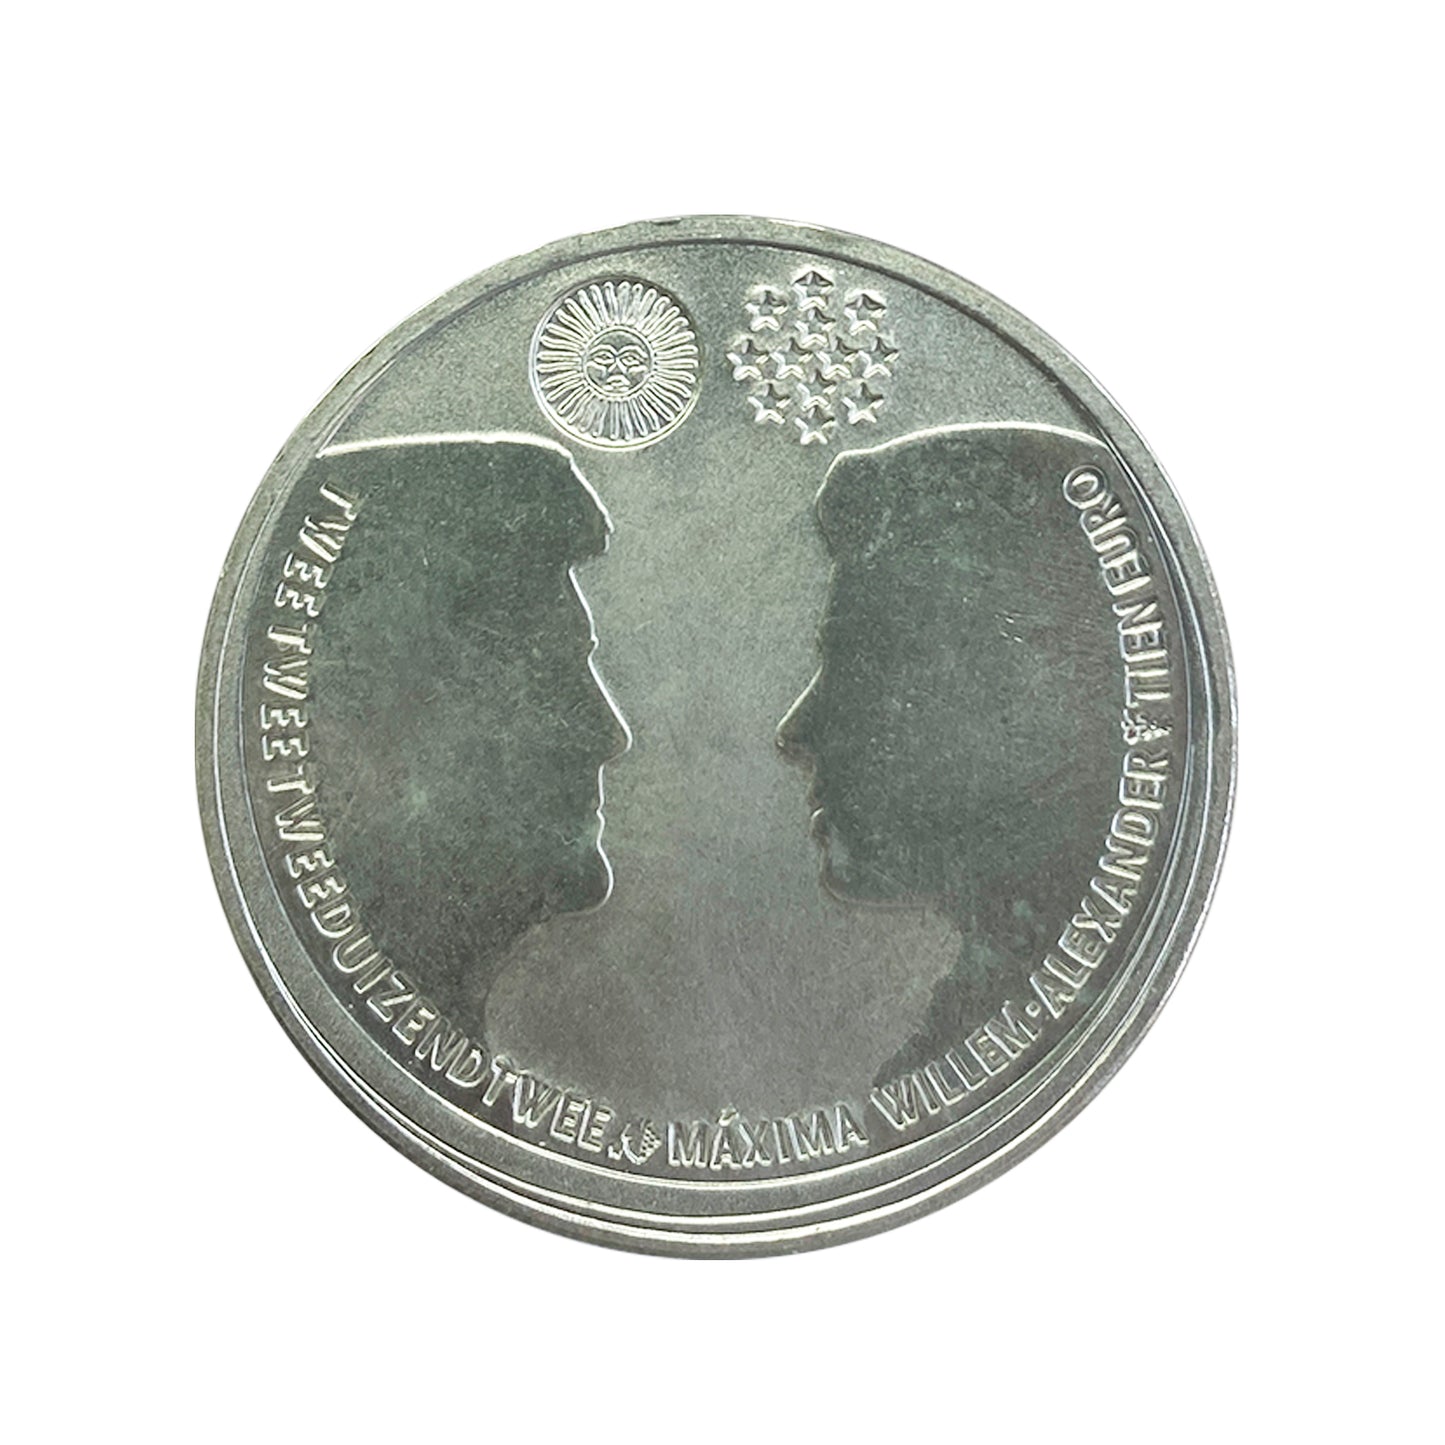 Países Bajos - Moneda 10 euros en plata 2002 - Boda